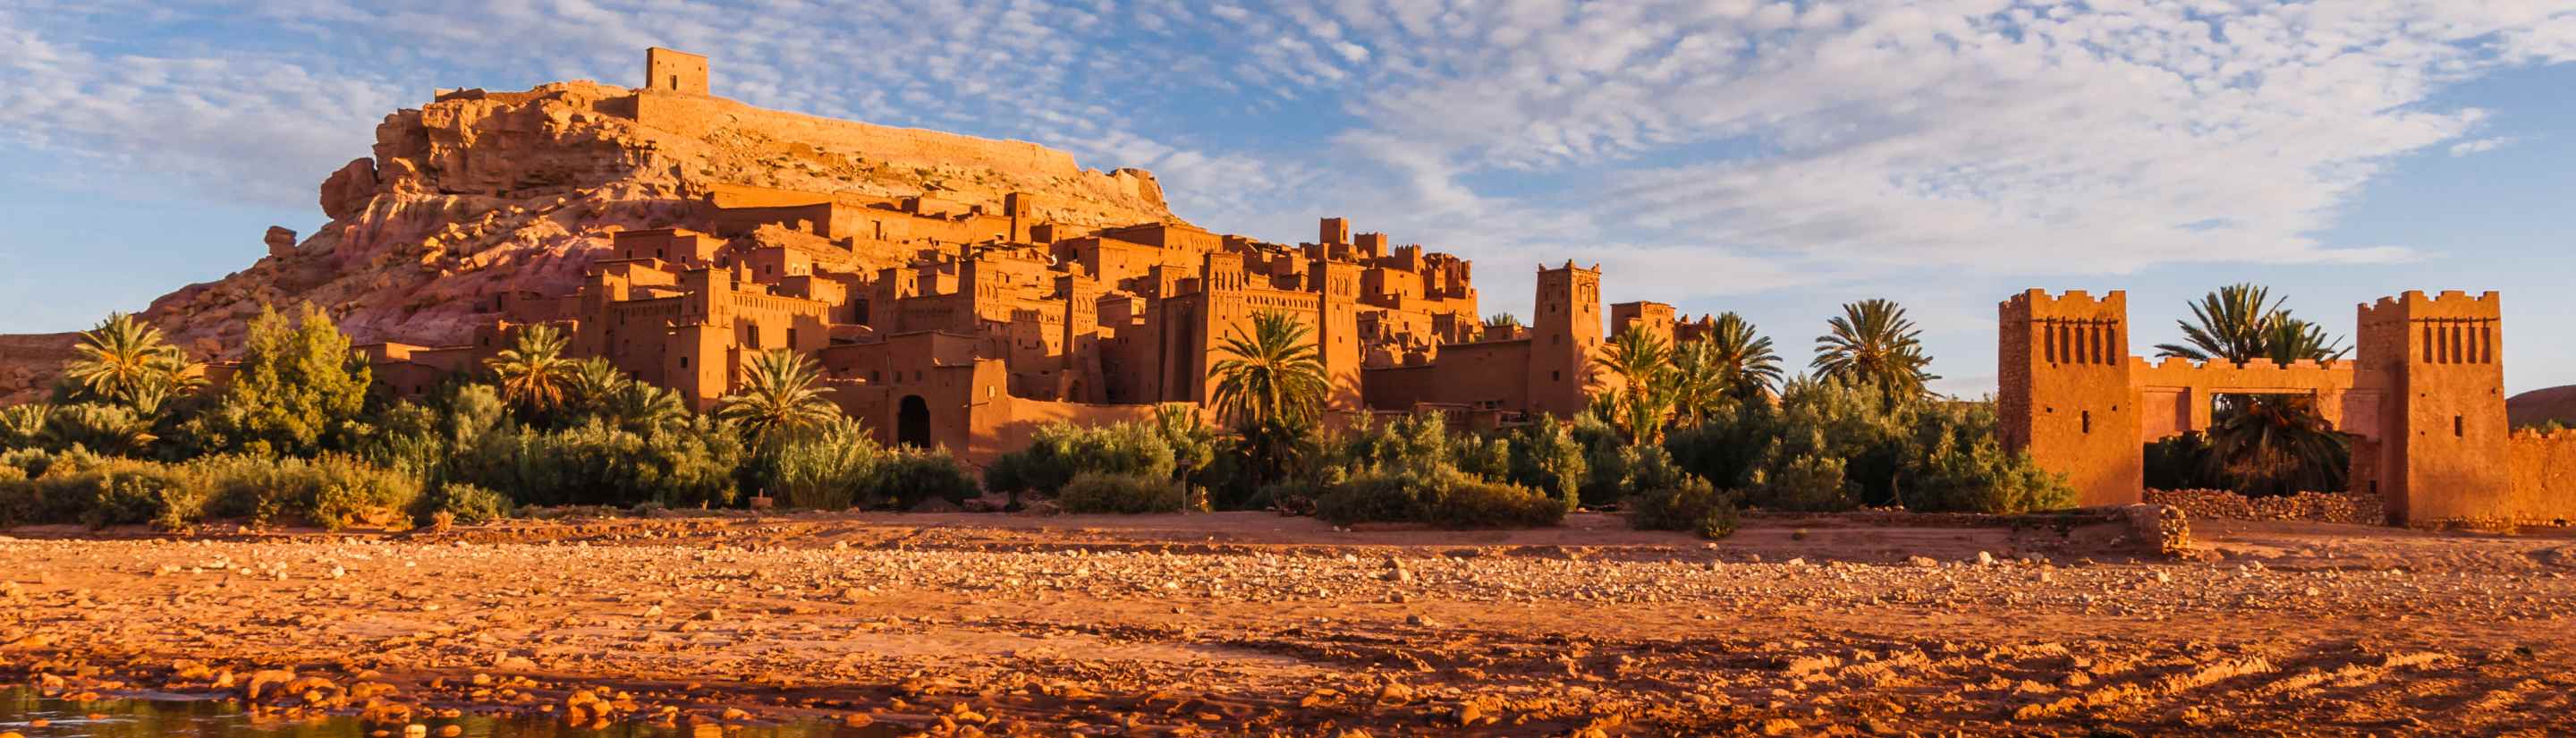 TARUK Filme - Marokko